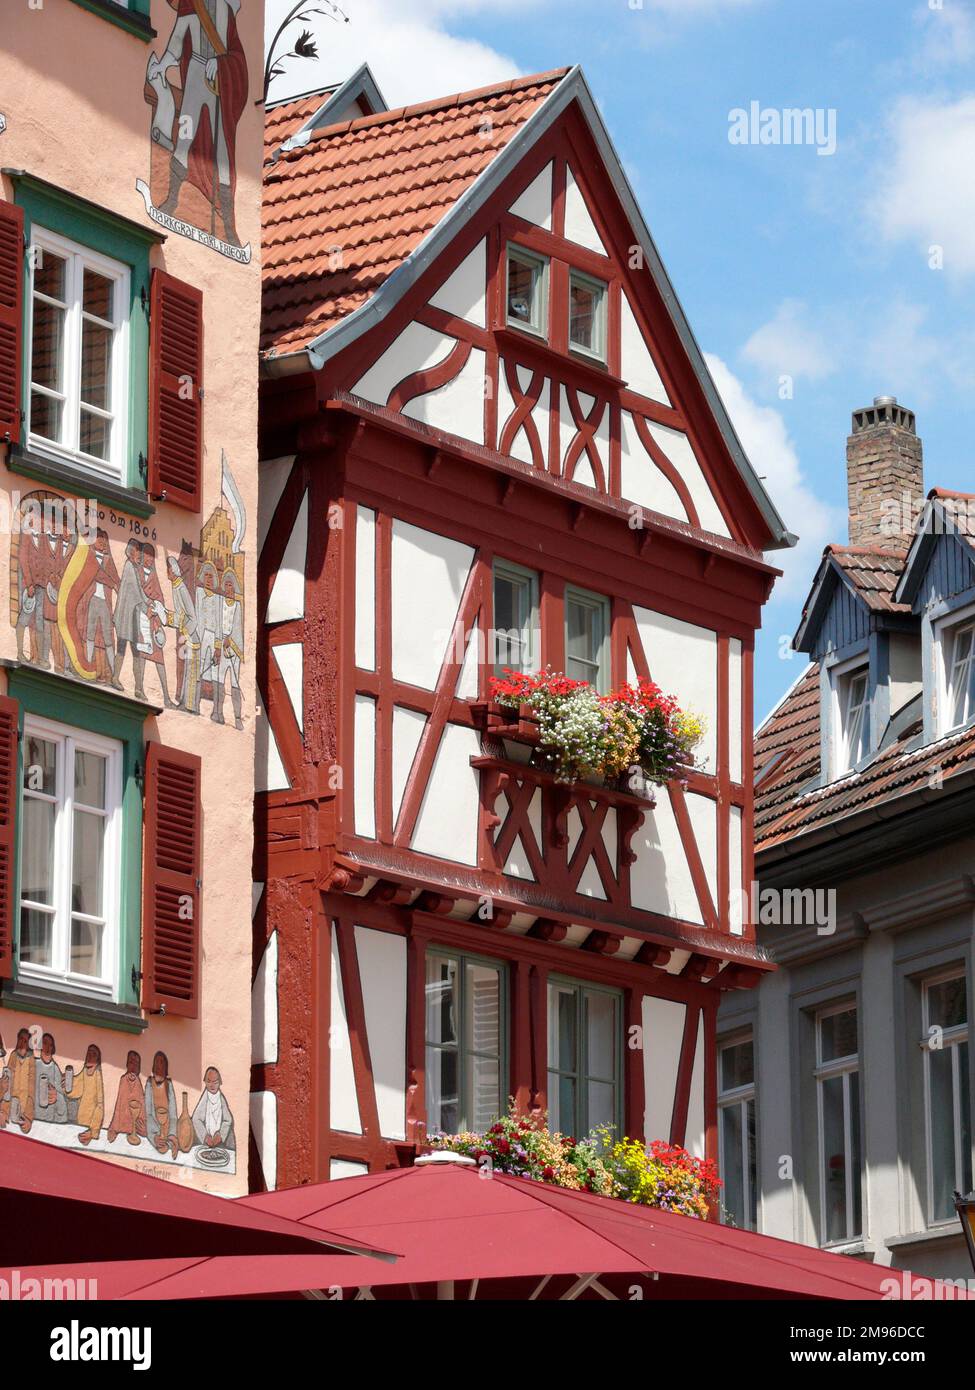 Vue sur l'hôtel Zum Karpfen, maison à pans de bois, dans la ville d'Eberbach, Bade-Wurtemberg, Allemagne. Les peintures sur la façade (à gauche) illustrent l'histoire de la ville. Banque D'Images